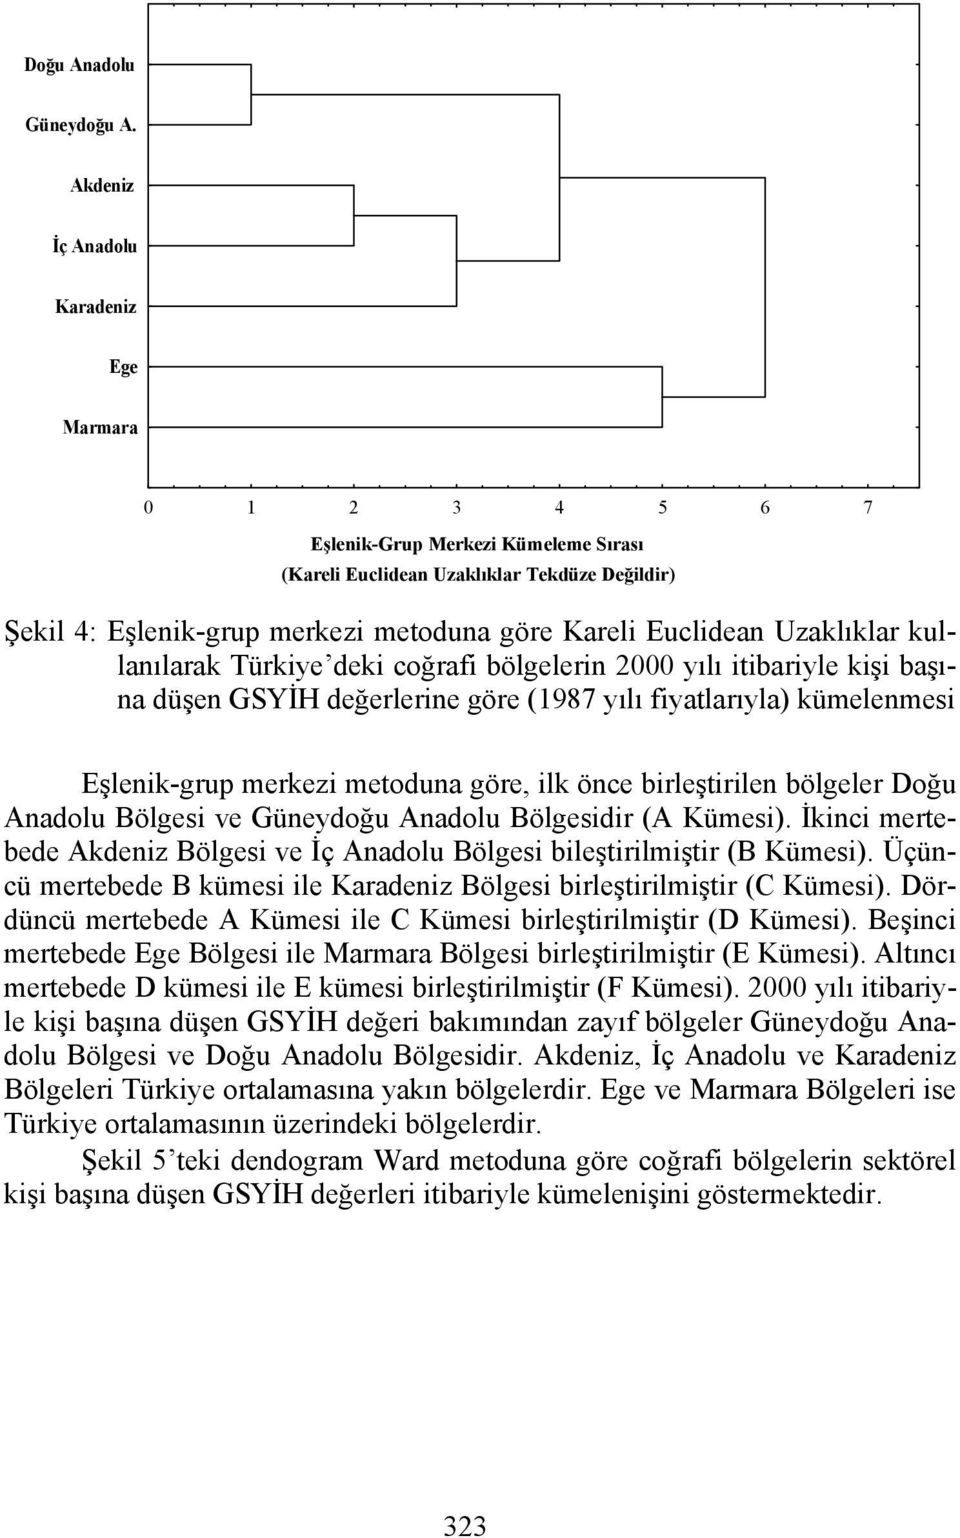 Uzaklıklar kullanılarak Türkiye deki coğrafi bölgelerin 000 yılı iibariyle kişi başına düşen GSYİH değerlerine göre (987 yılı fiyalarıyla) kümelenmesi Eşlenik-gru merkezi meoduna göre, ilk önce